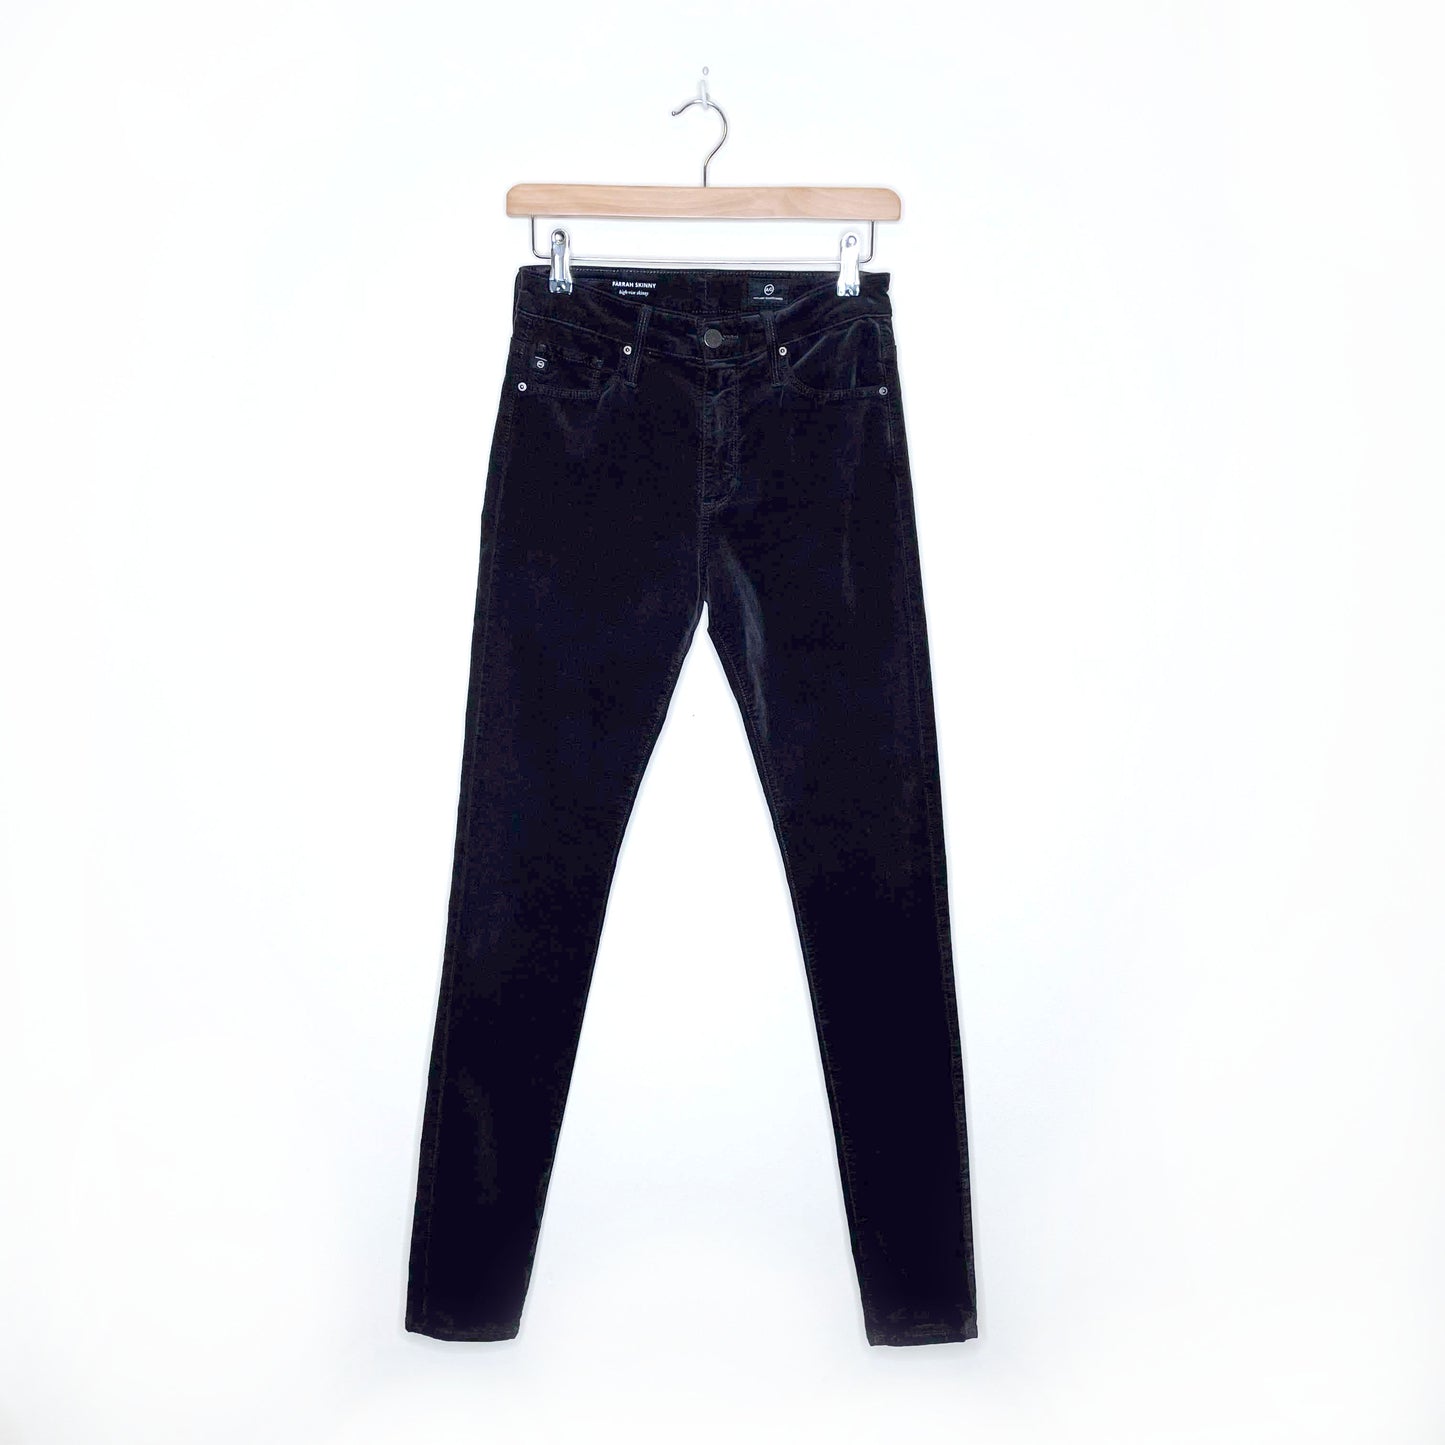 ag the farrah high rise skinny black velvet pants - size 26